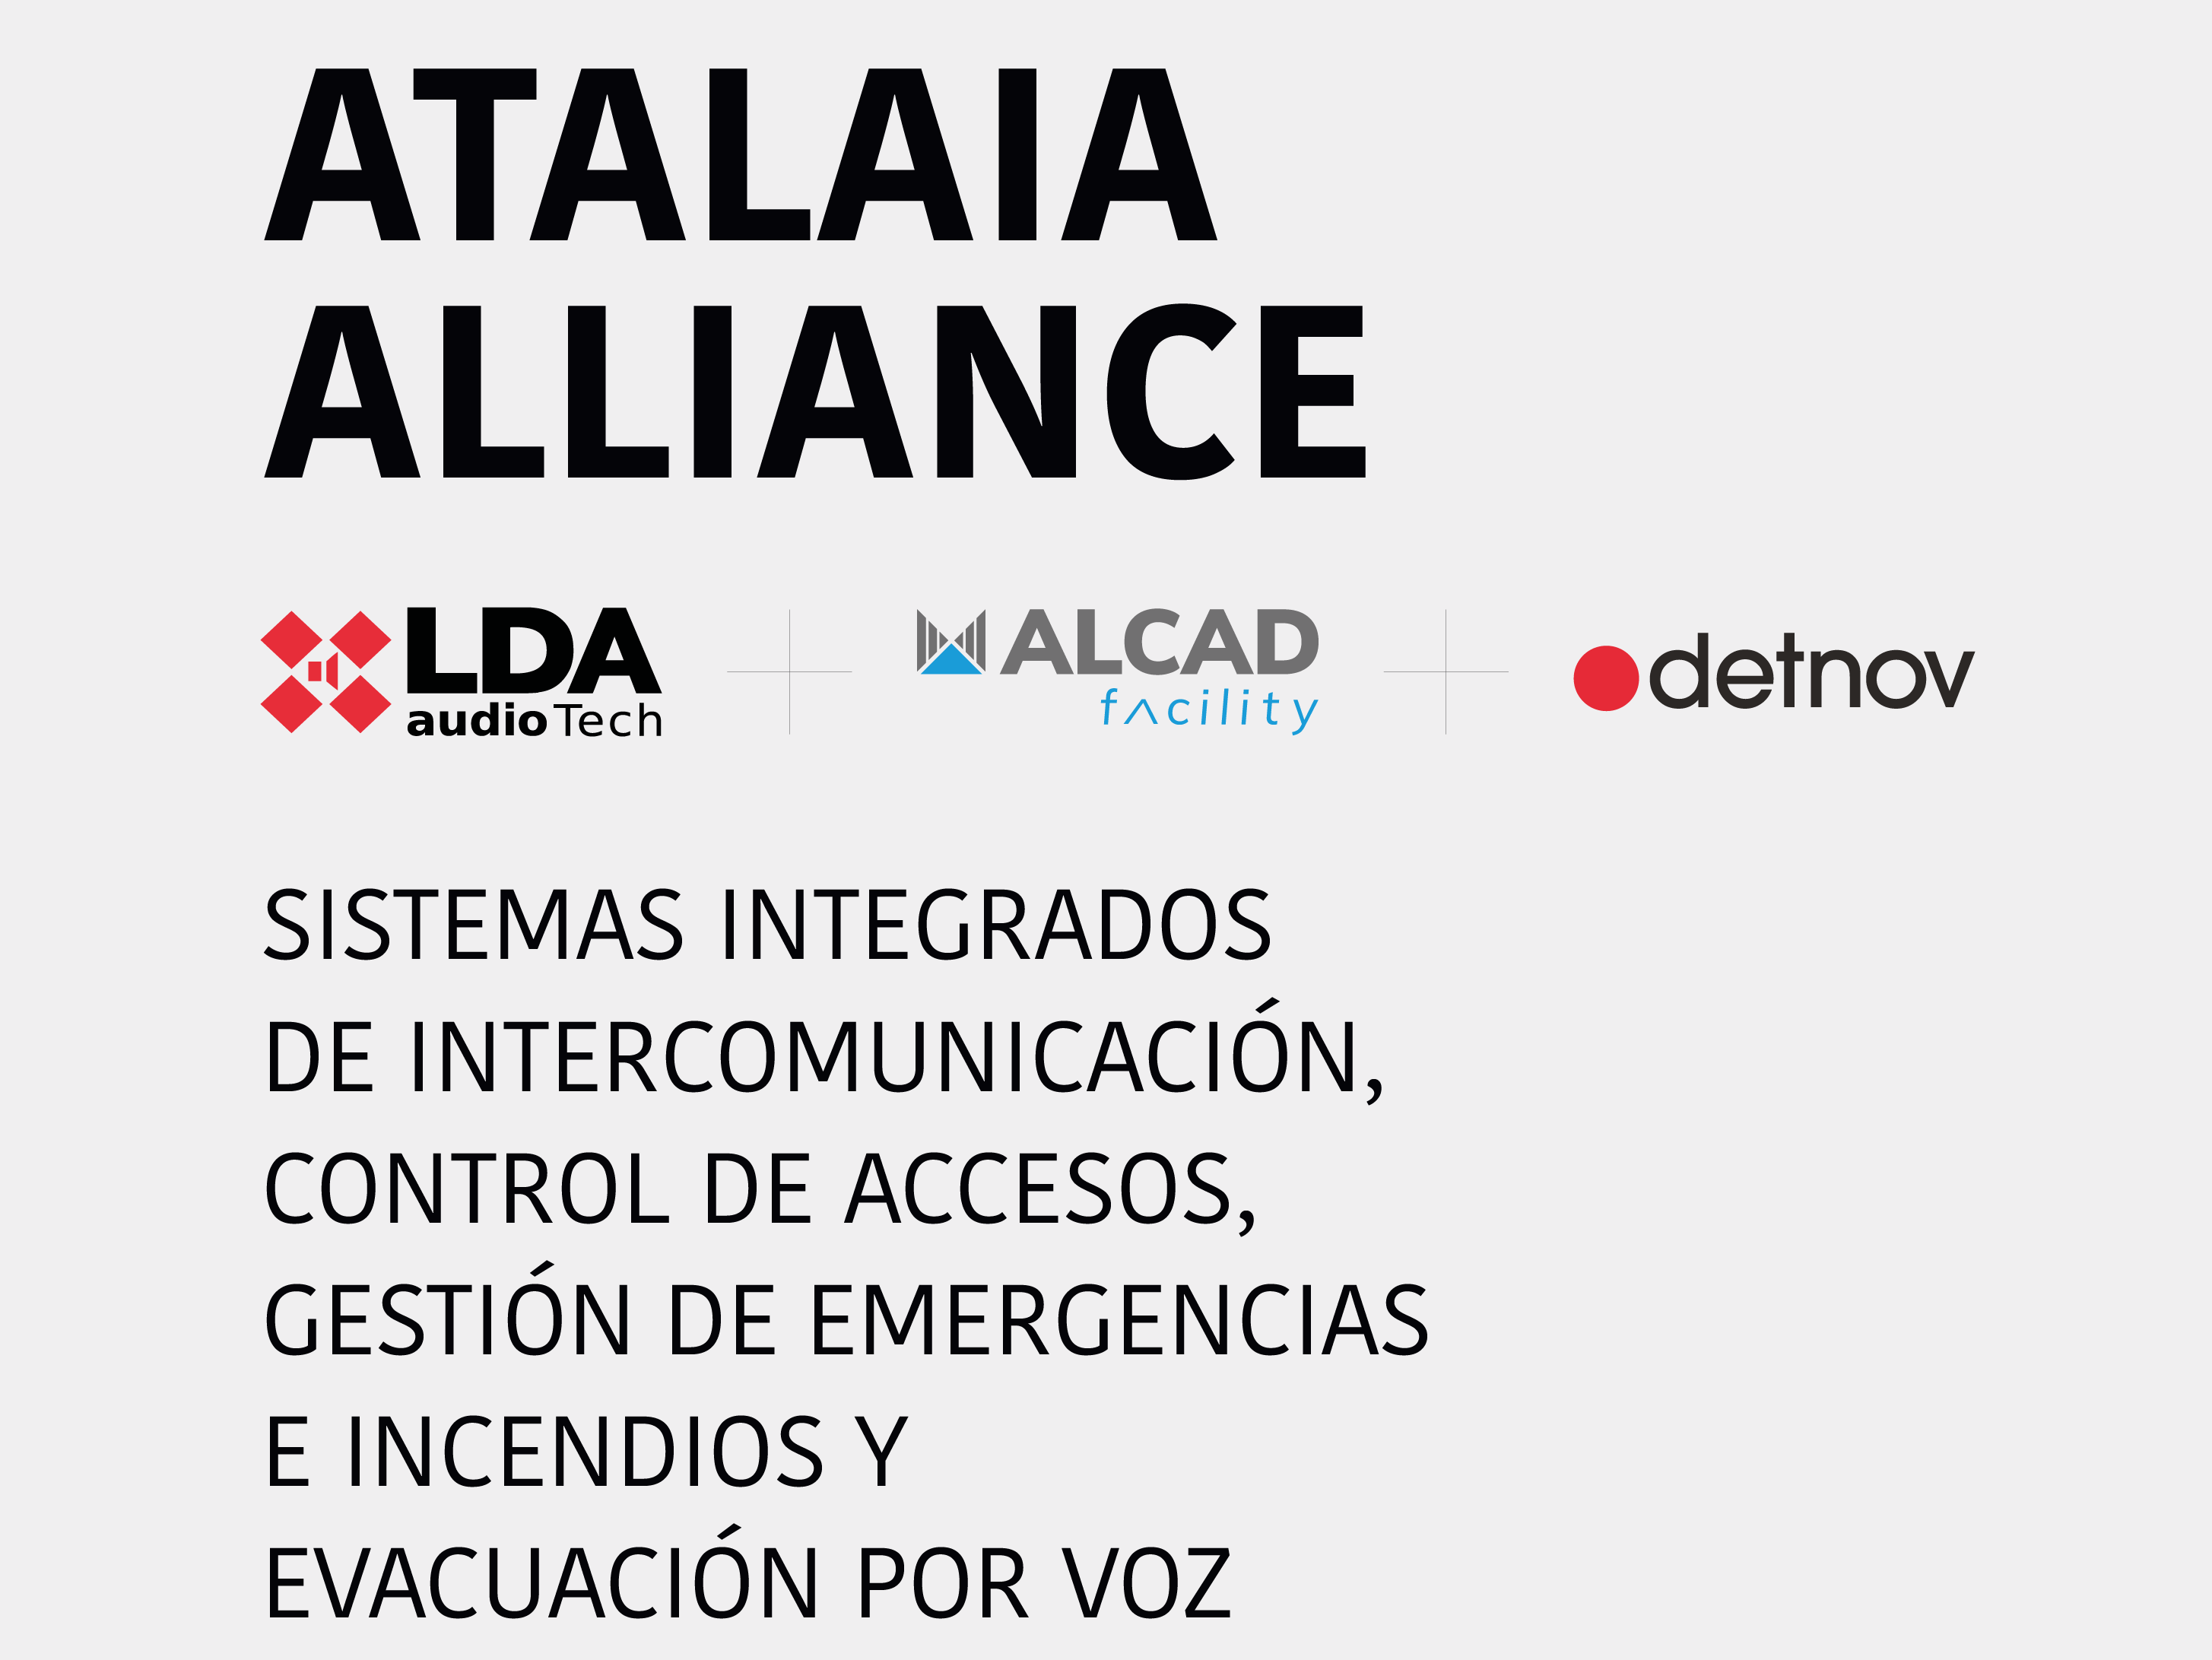 Audio Tech, Detnov y Alcad lanzan la plataforma de seguridad Atalaia Alliance